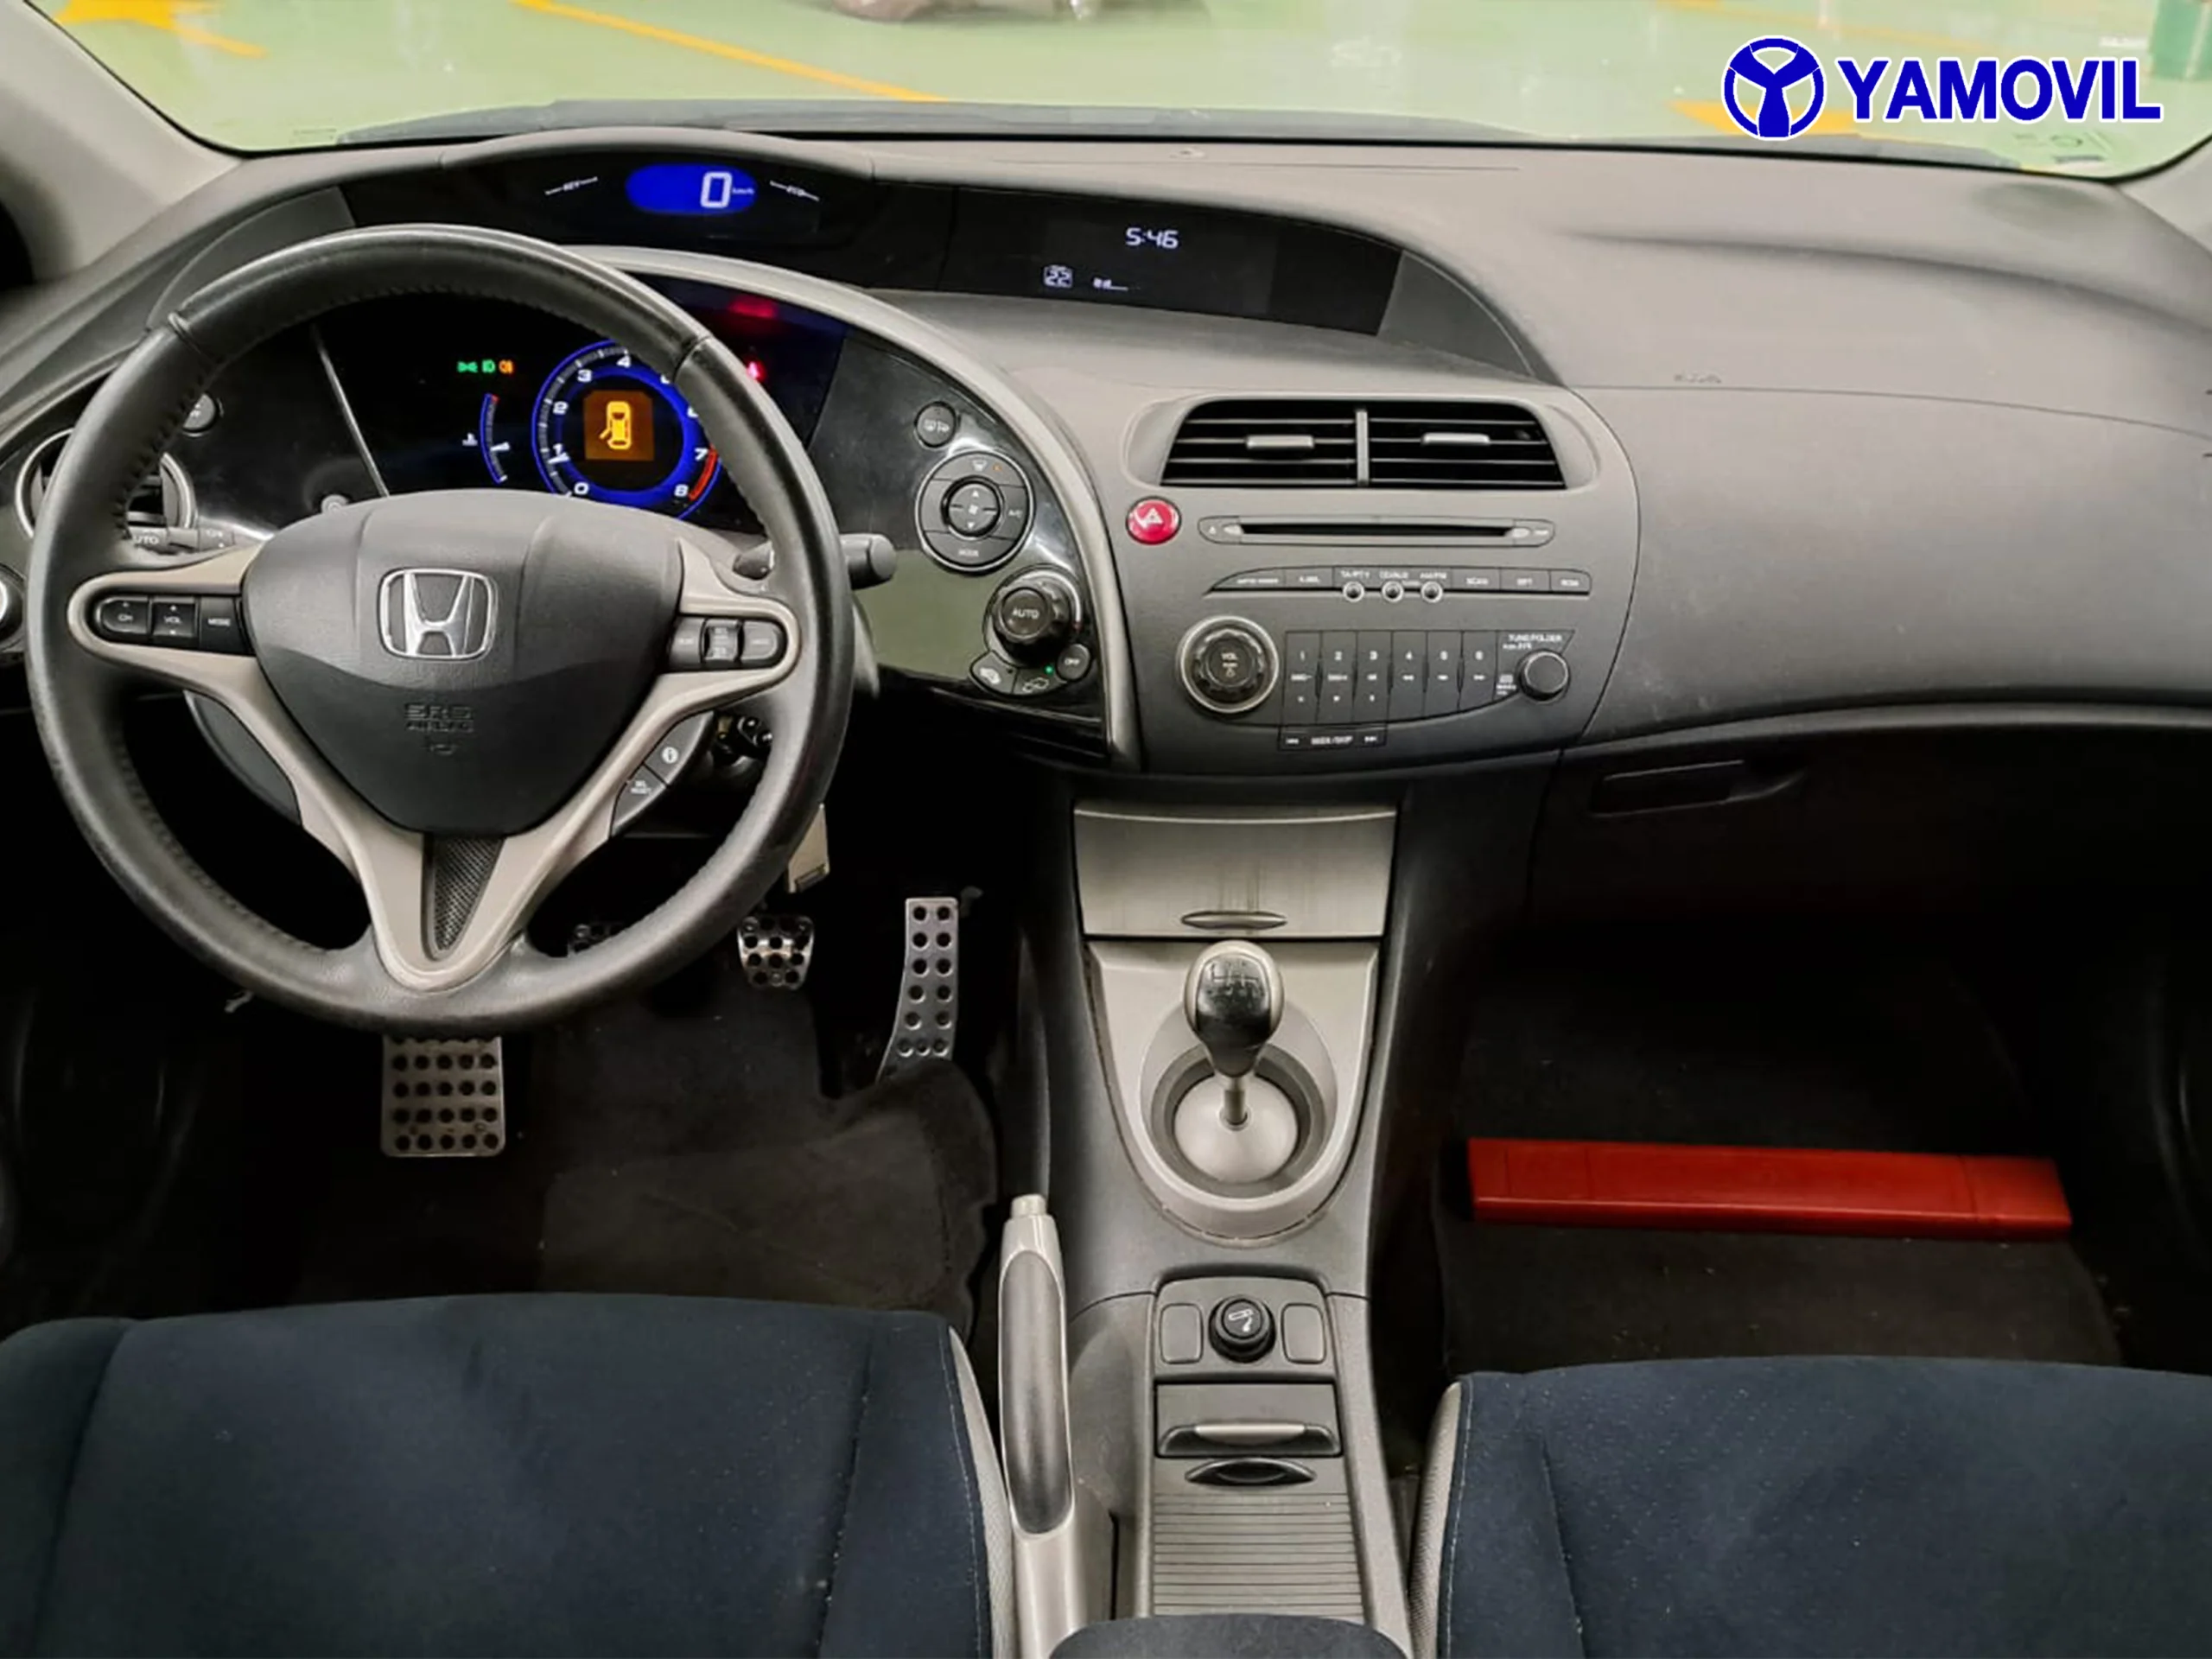 Honda Civic 1.8 I-VTEC Sport 103 kW (140 CV) - Foto 5